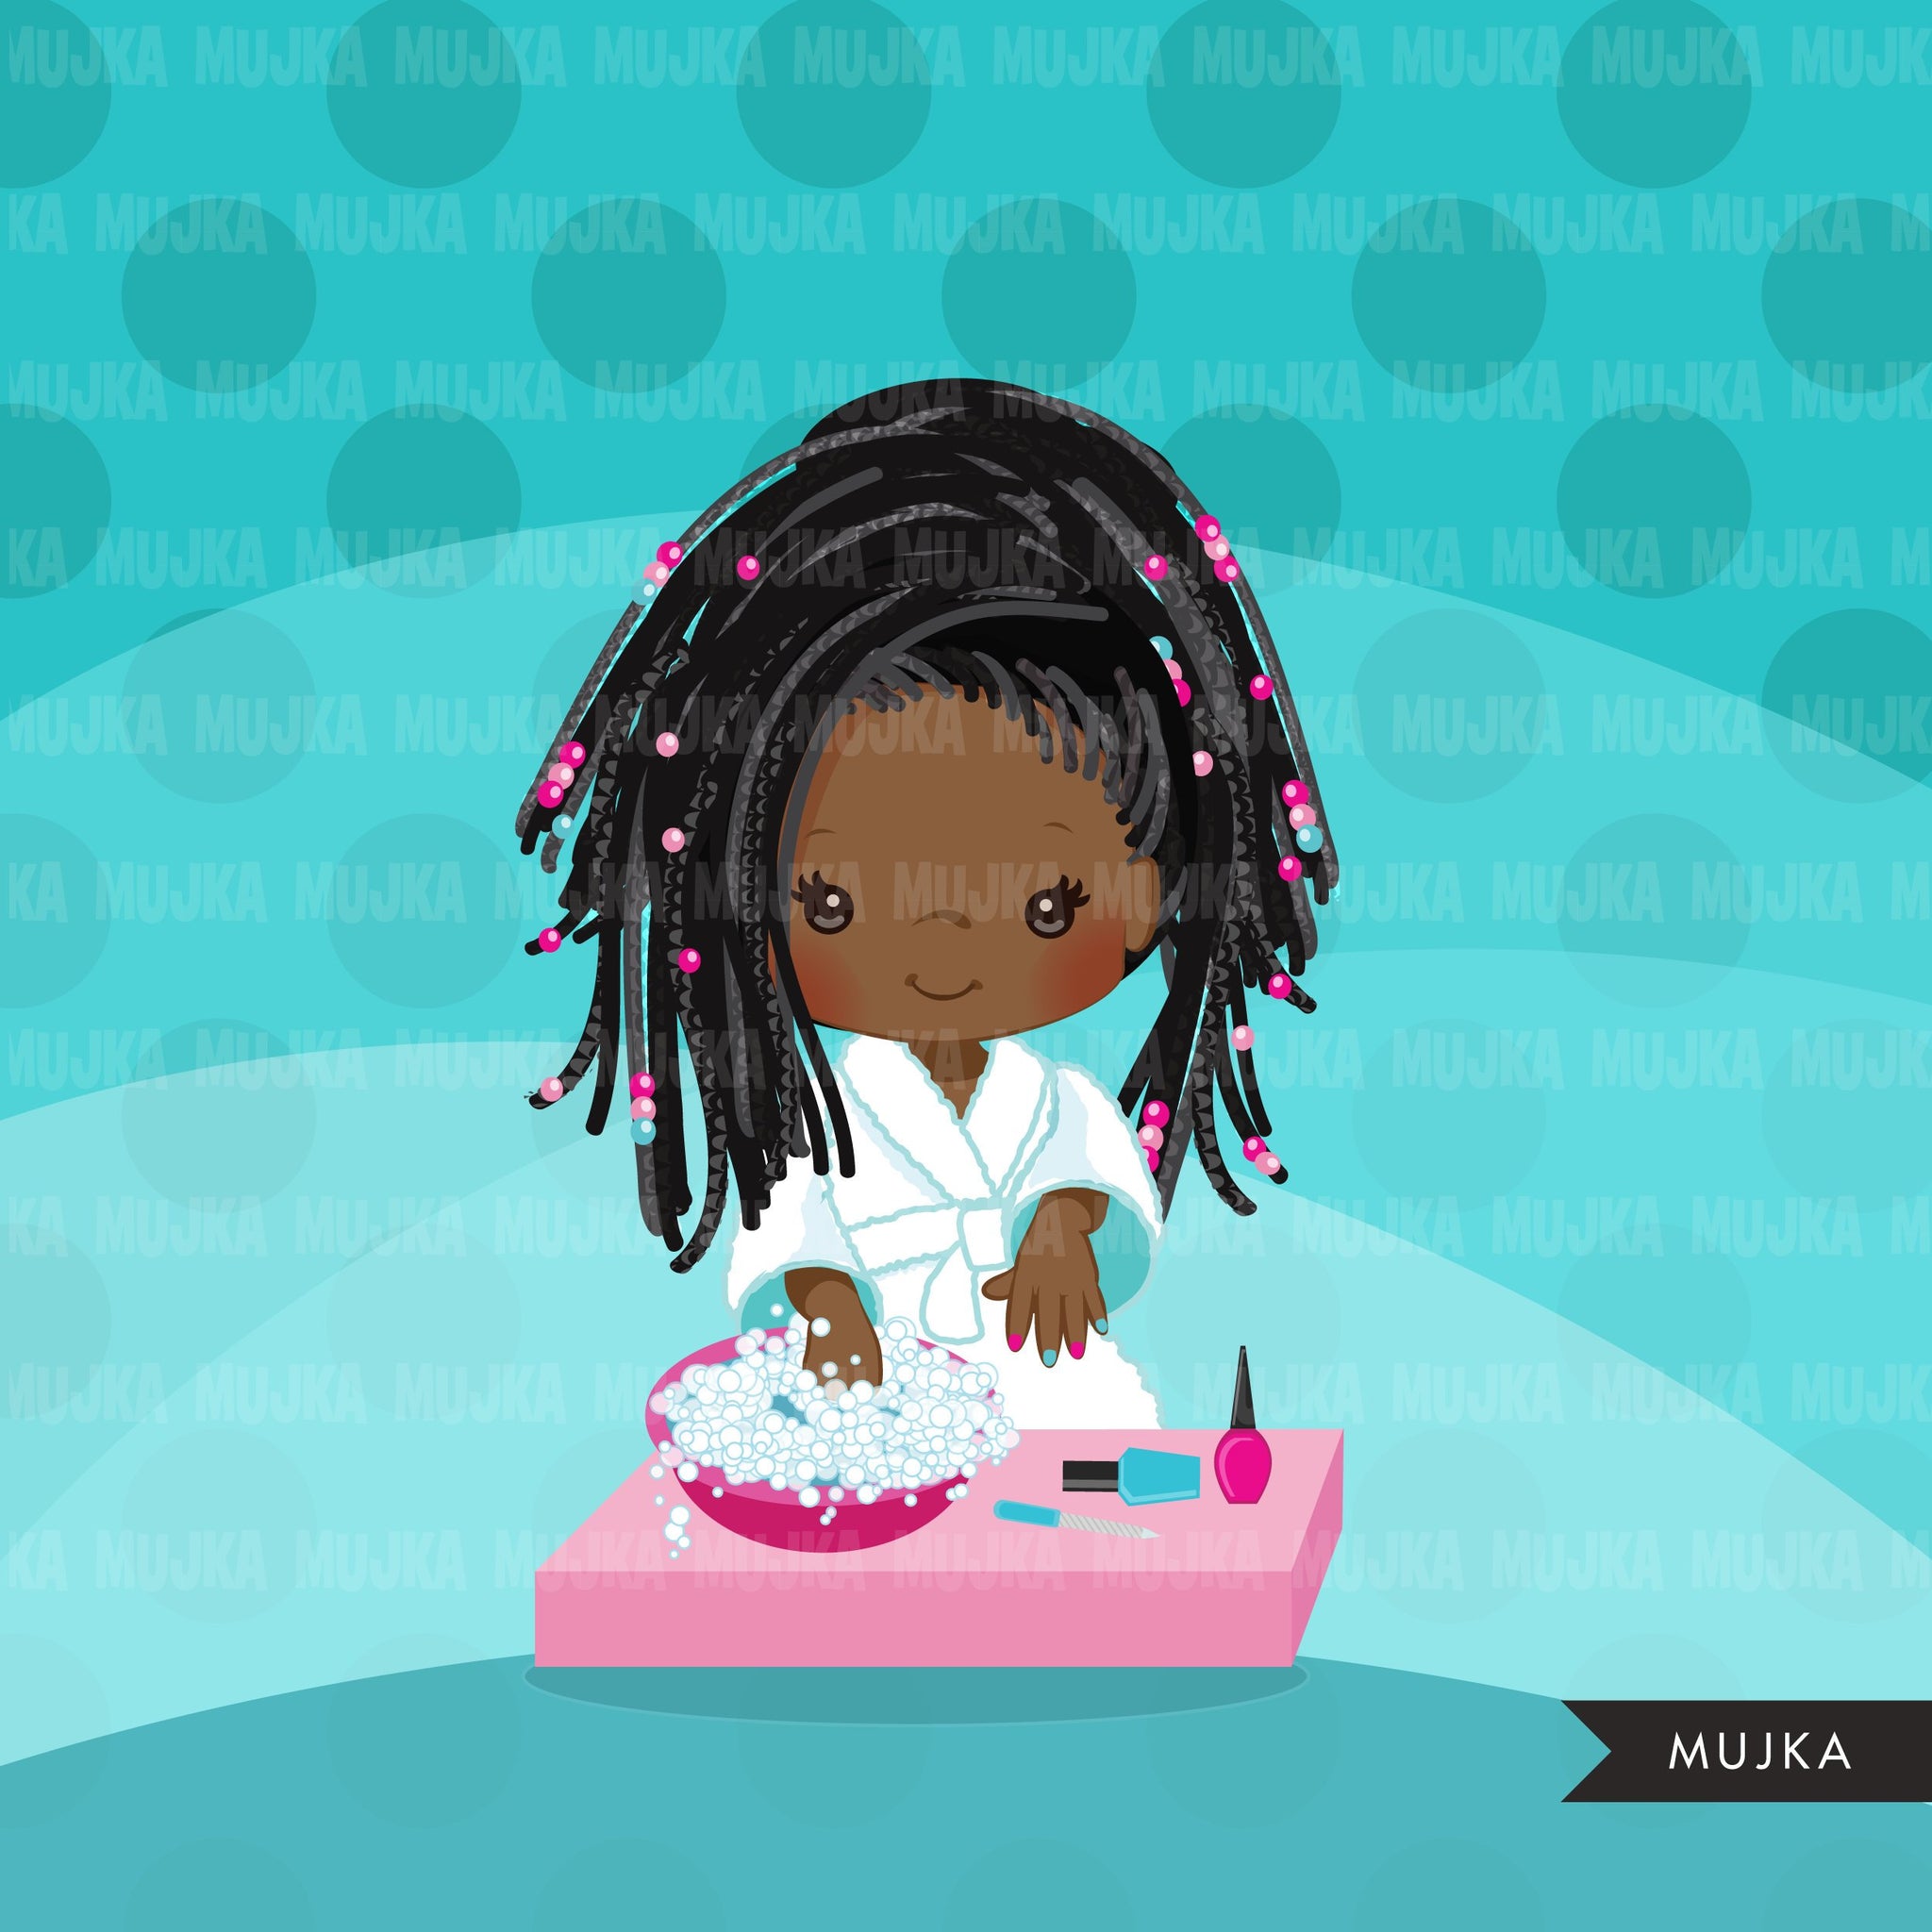 Clipart de spa, manicure garota negra, banho, gráficos de festa de aniversário de spa esmalte para unhas, uso comercial PNG digital clip art, crianças afro